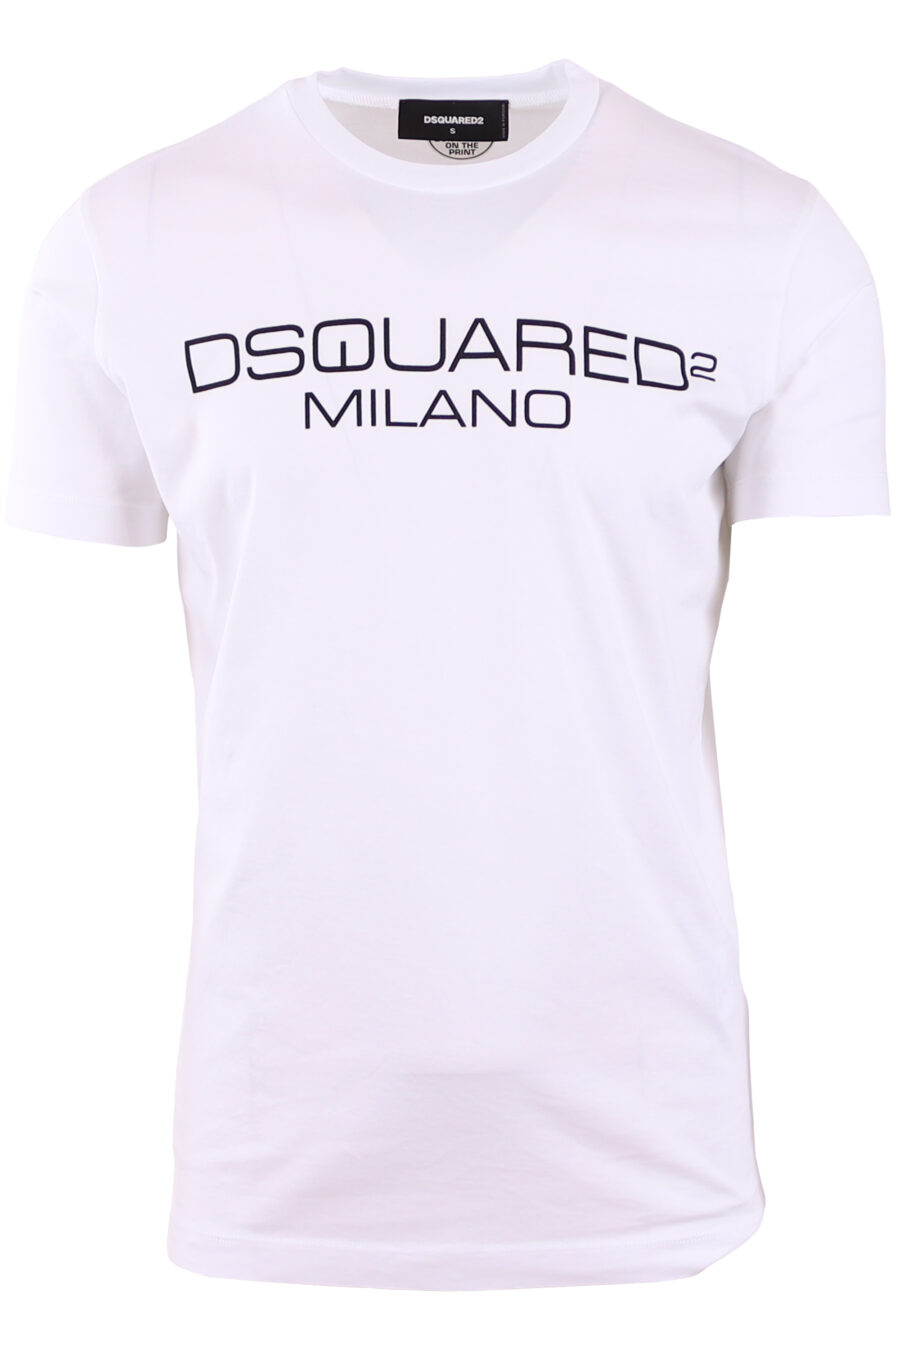 maxilogo T-shirt branca "dsquared2 milano" - IMG 3569 1